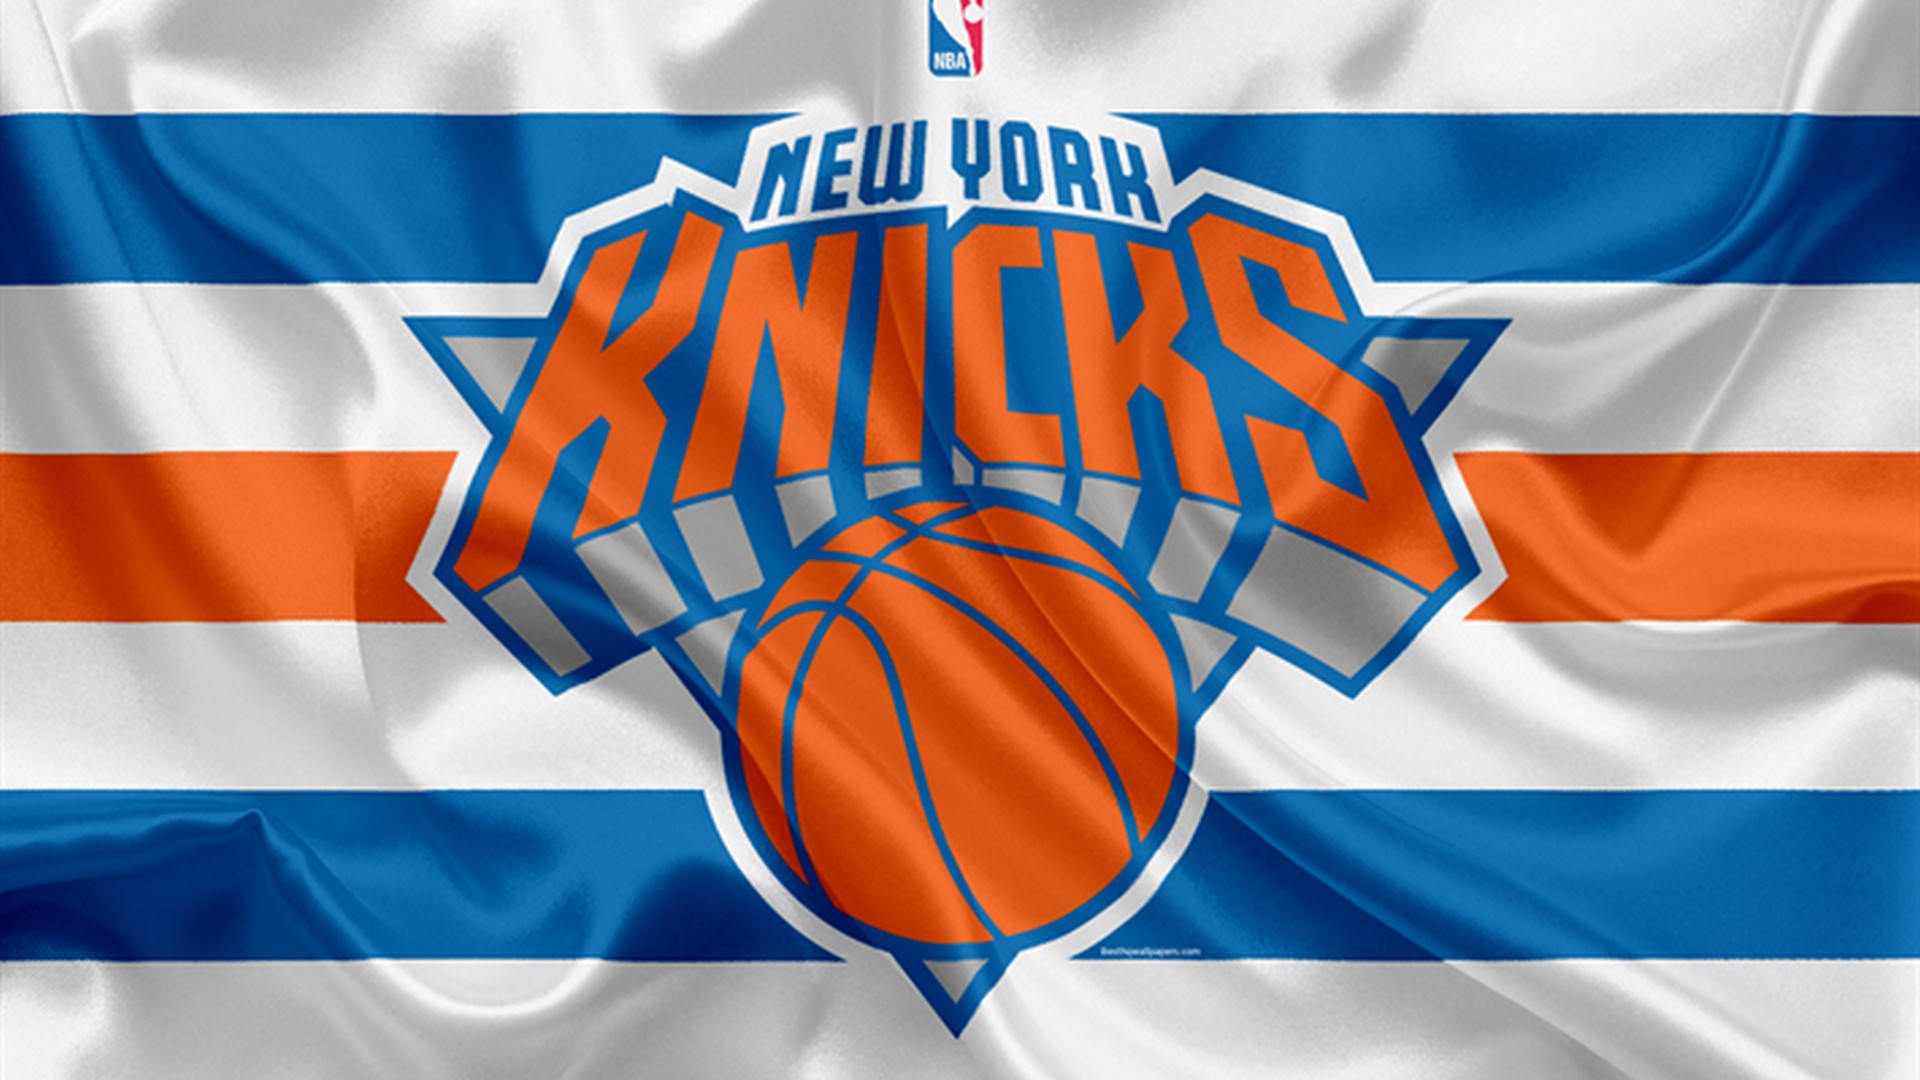 Wallpaper HD New York Knicks Basketball Wallpaper